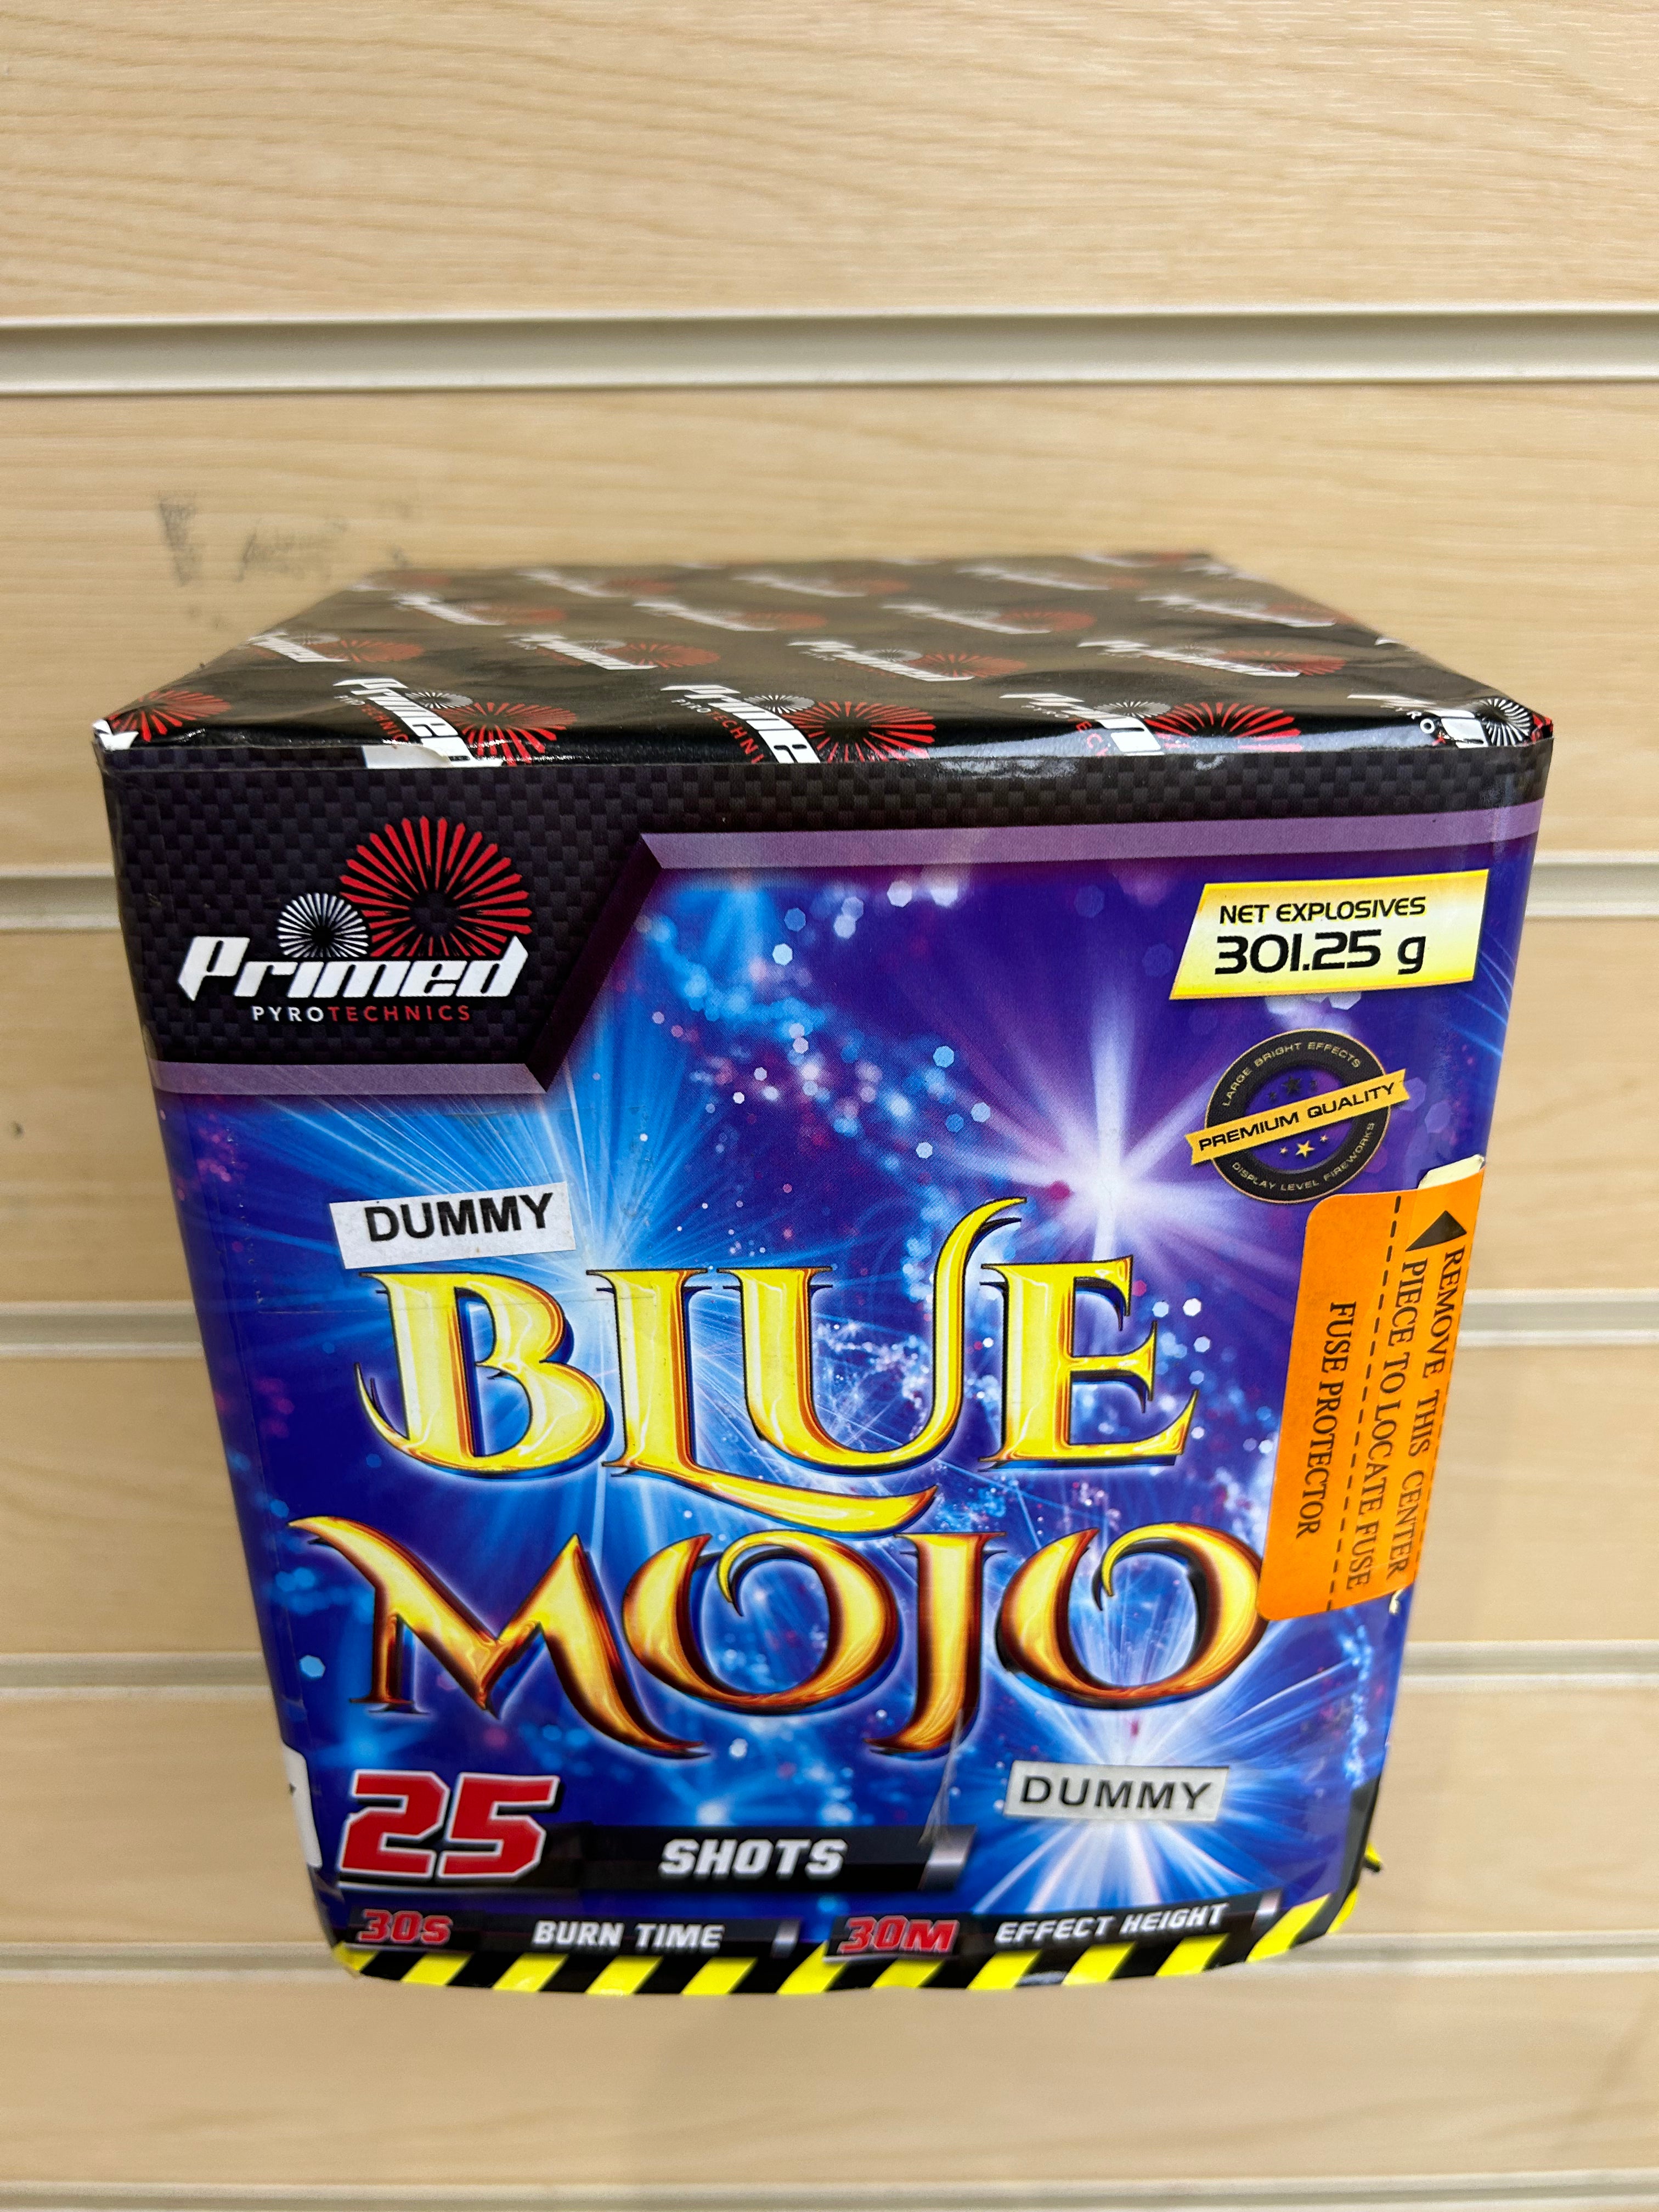 Blue Mojo